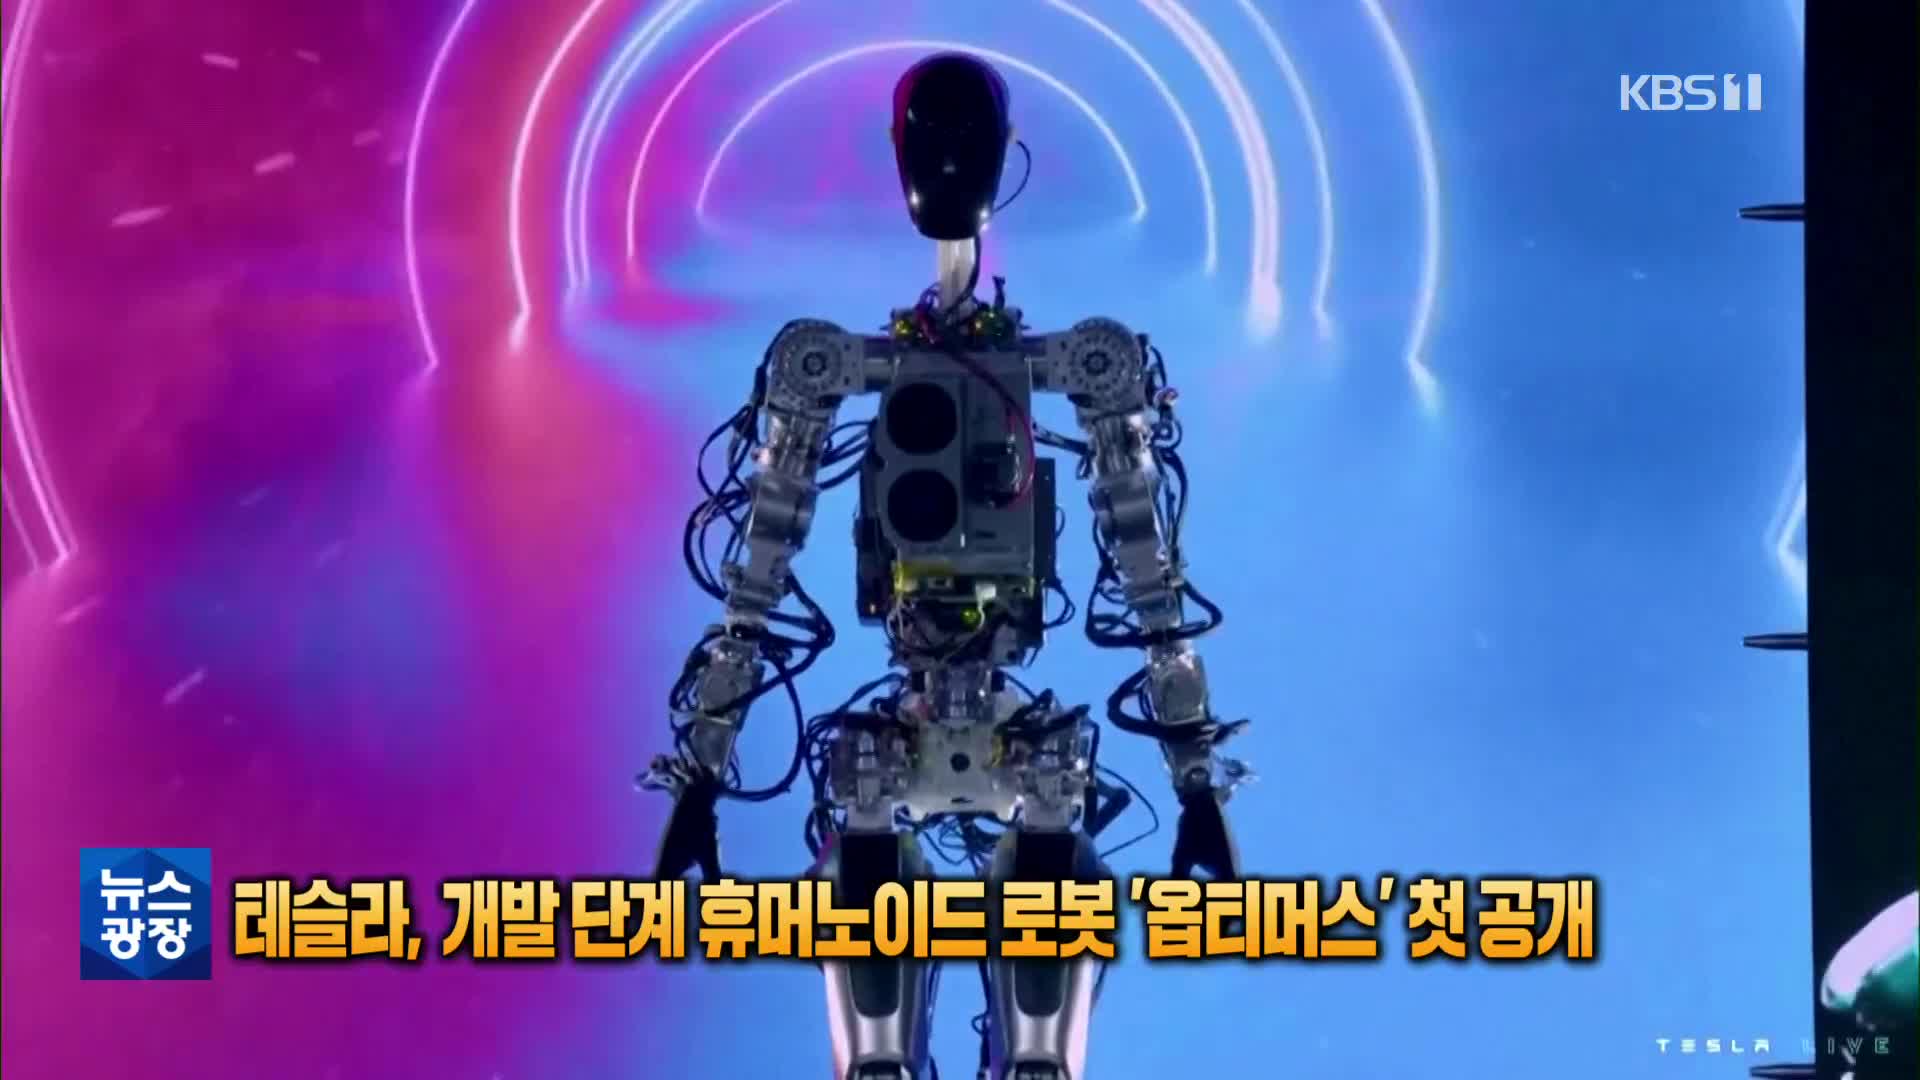 [톡톡 지구촌] 테슬라, 개발 단계 휴머노이드 로봇 ‘옵티머스’ 첫 공개